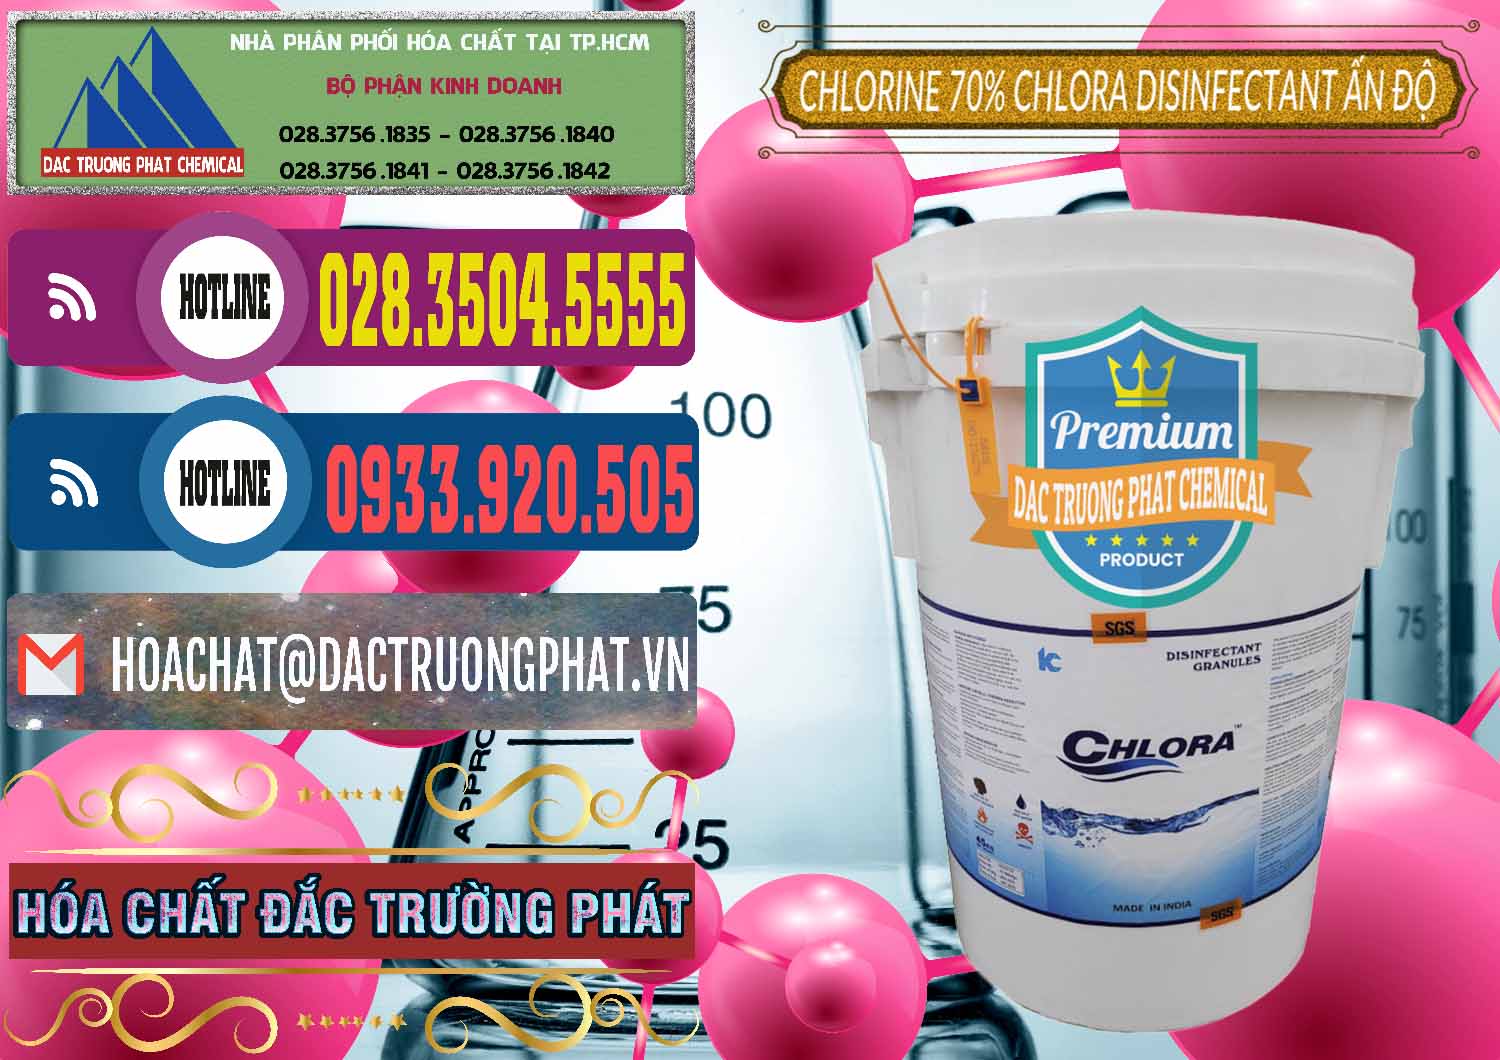 Bán & cung ứng Chlorine – Clorin 70% Chlora Disinfectant Ấn Độ India - 0213 - Cty chuyên cung cấp và nhập khẩu hóa chất tại TP.HCM - muabanhoachat.com.vn